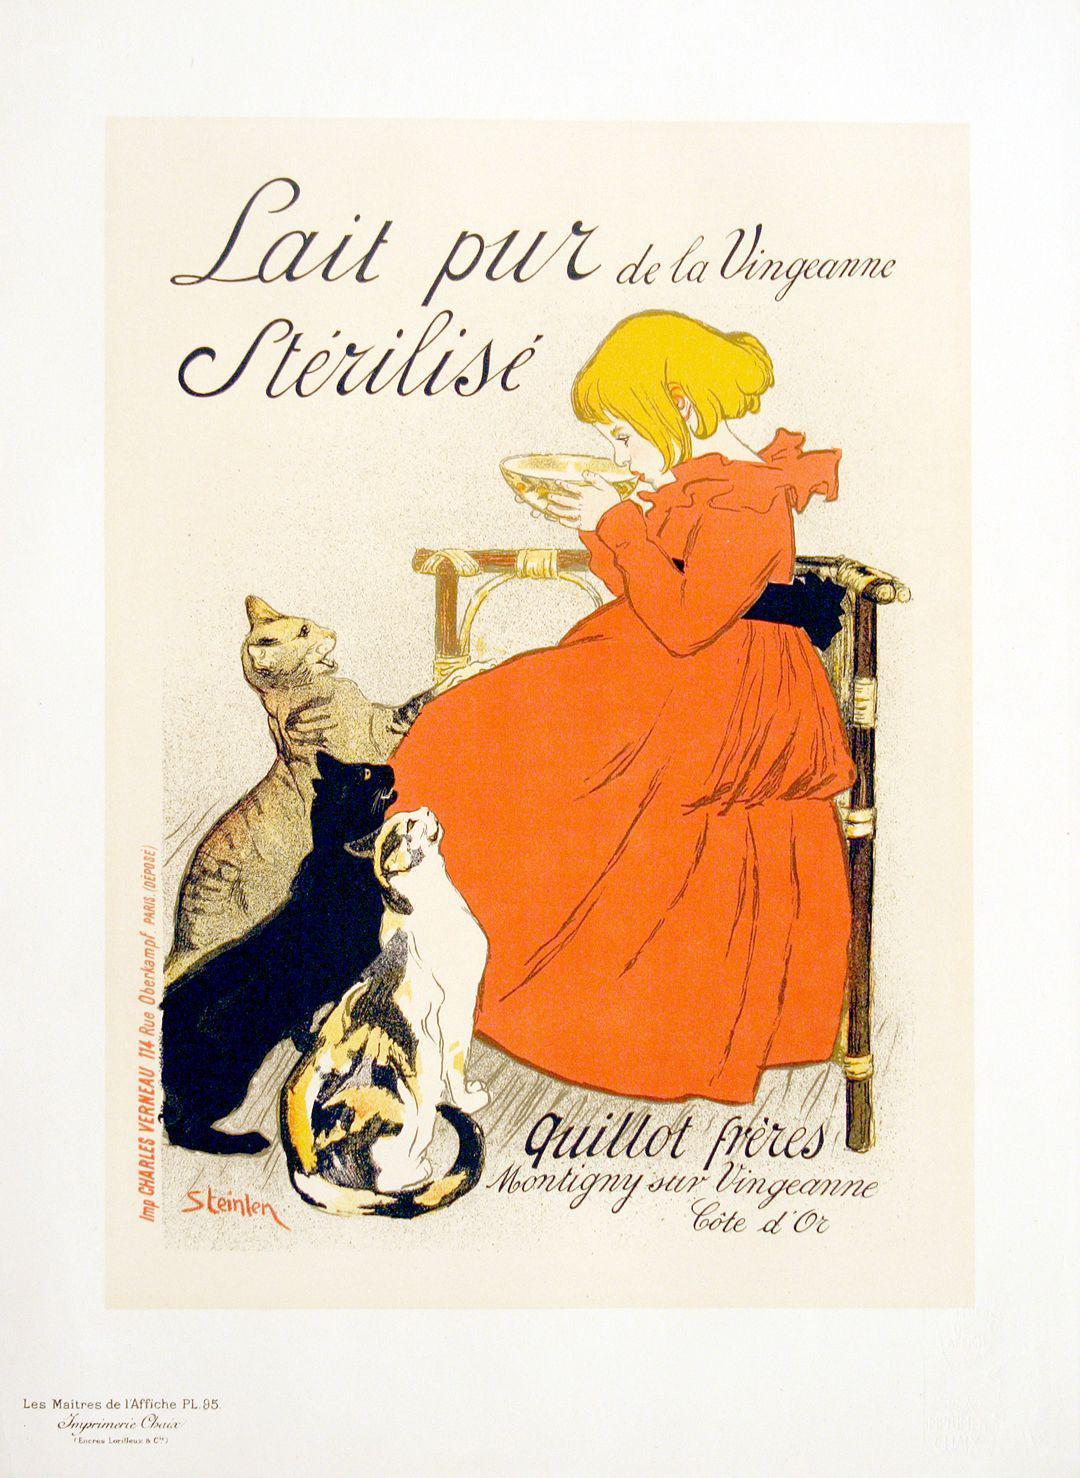 Original Maitre de L'Affiche - PL 95 Lait Pur Sterilise' by Theophile Steinlen 1896